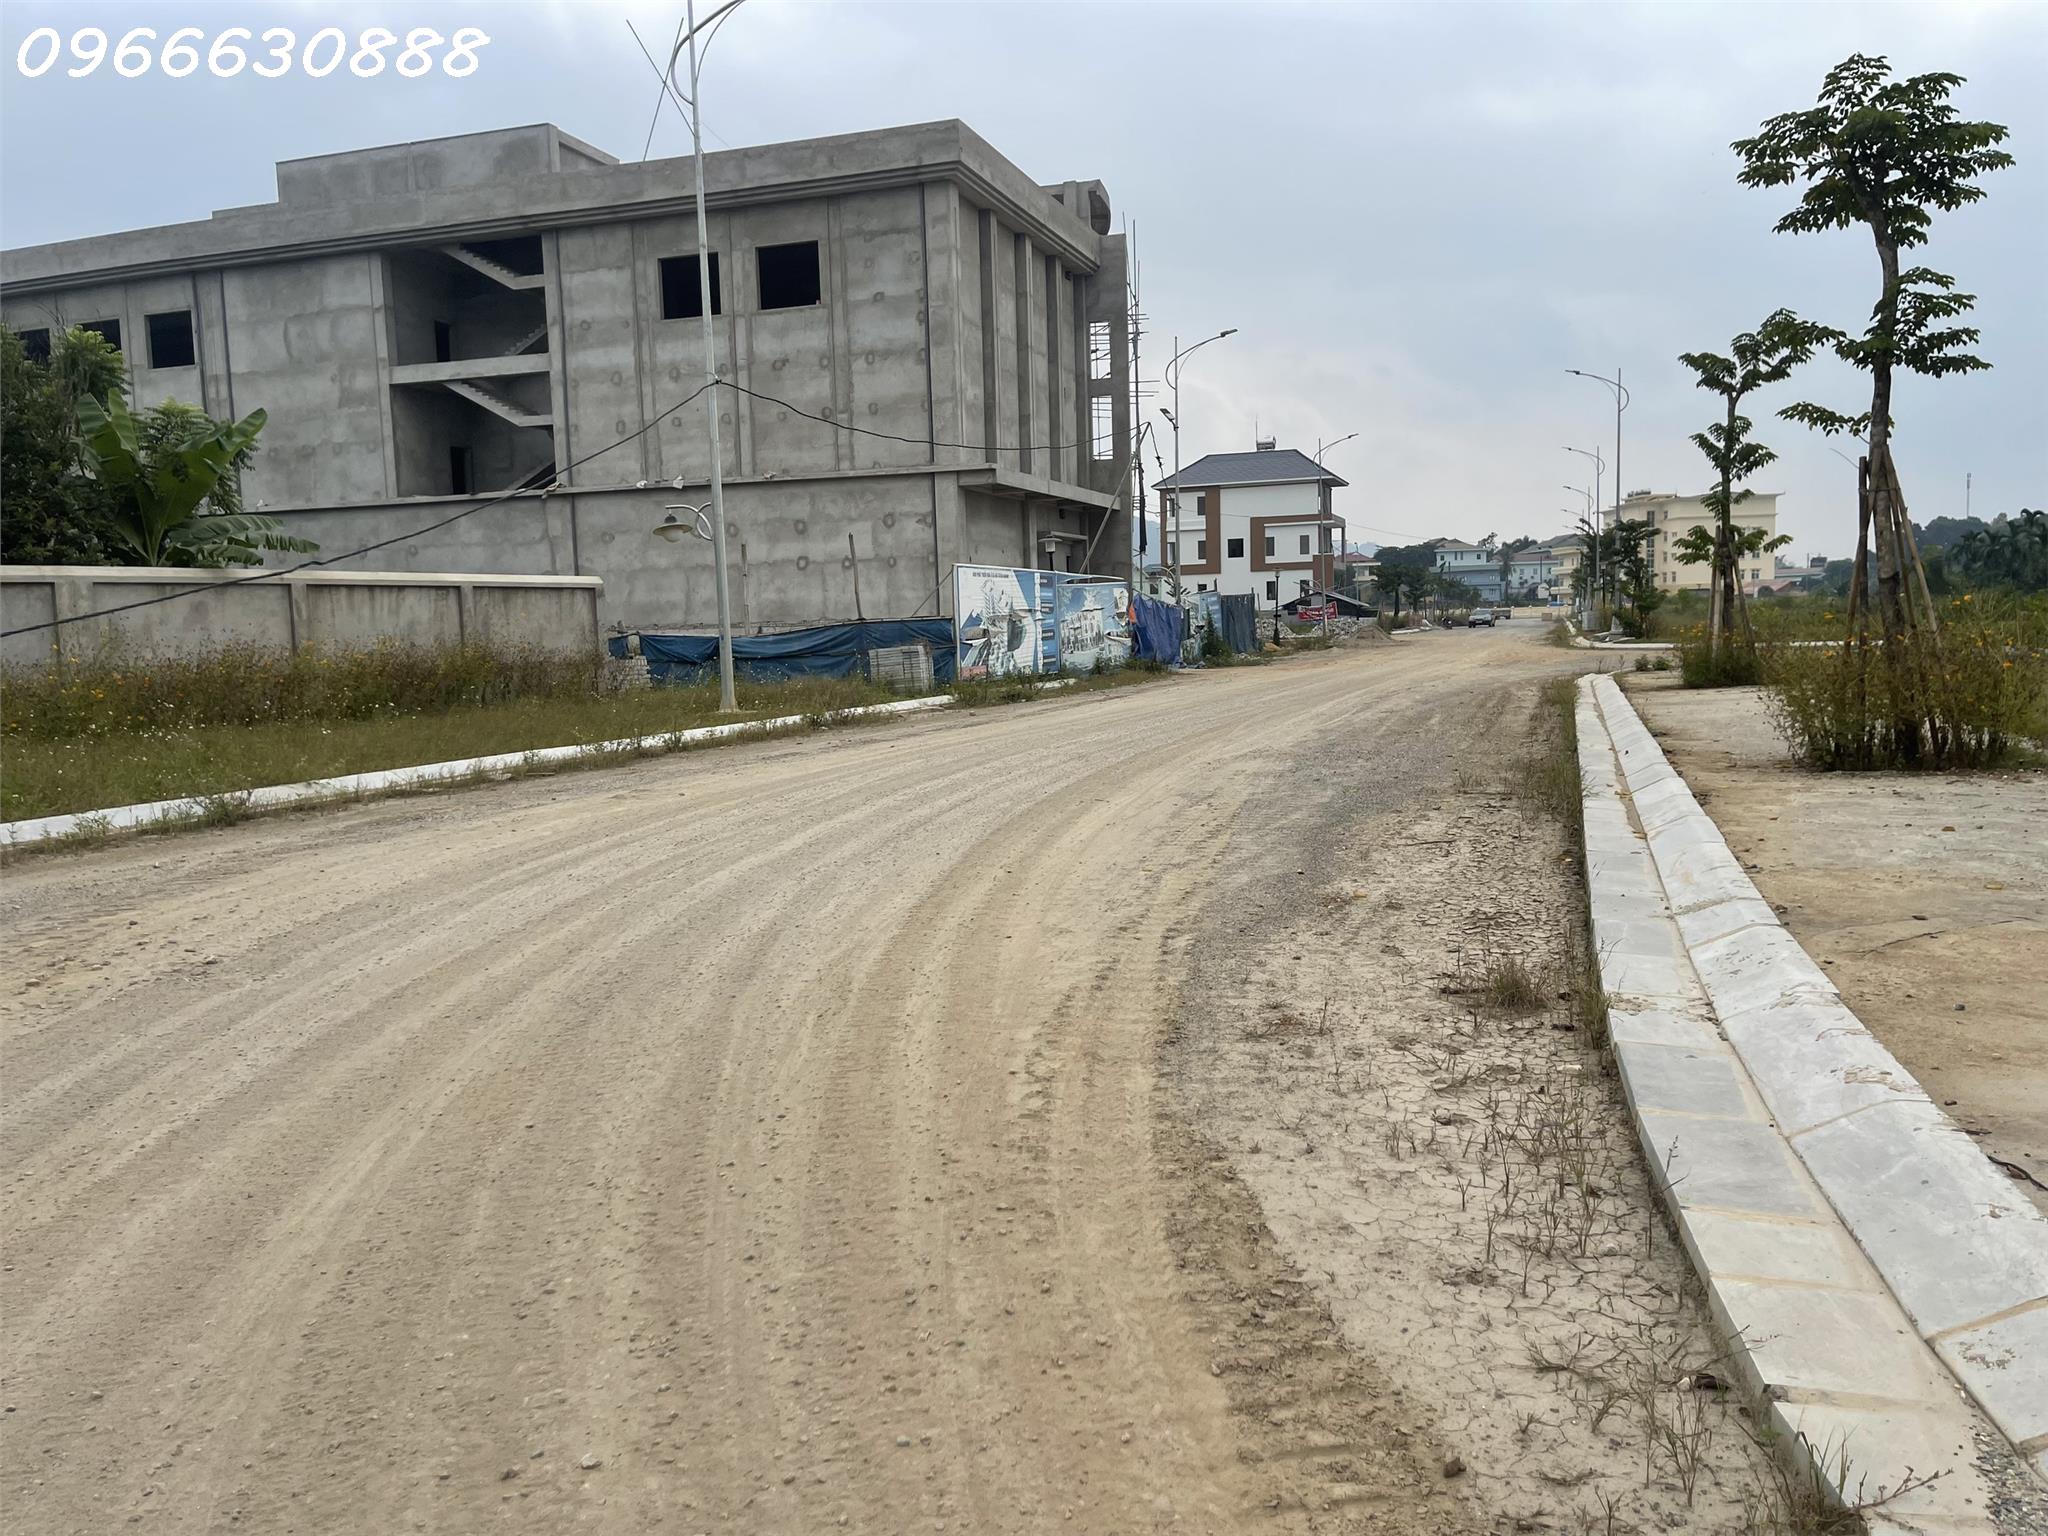 Gia đình cần tiền bán gấp ô đất phân lô tại khu đô thị Tân Hà TP Tuyên Quang vị trí cách trung tâm 1